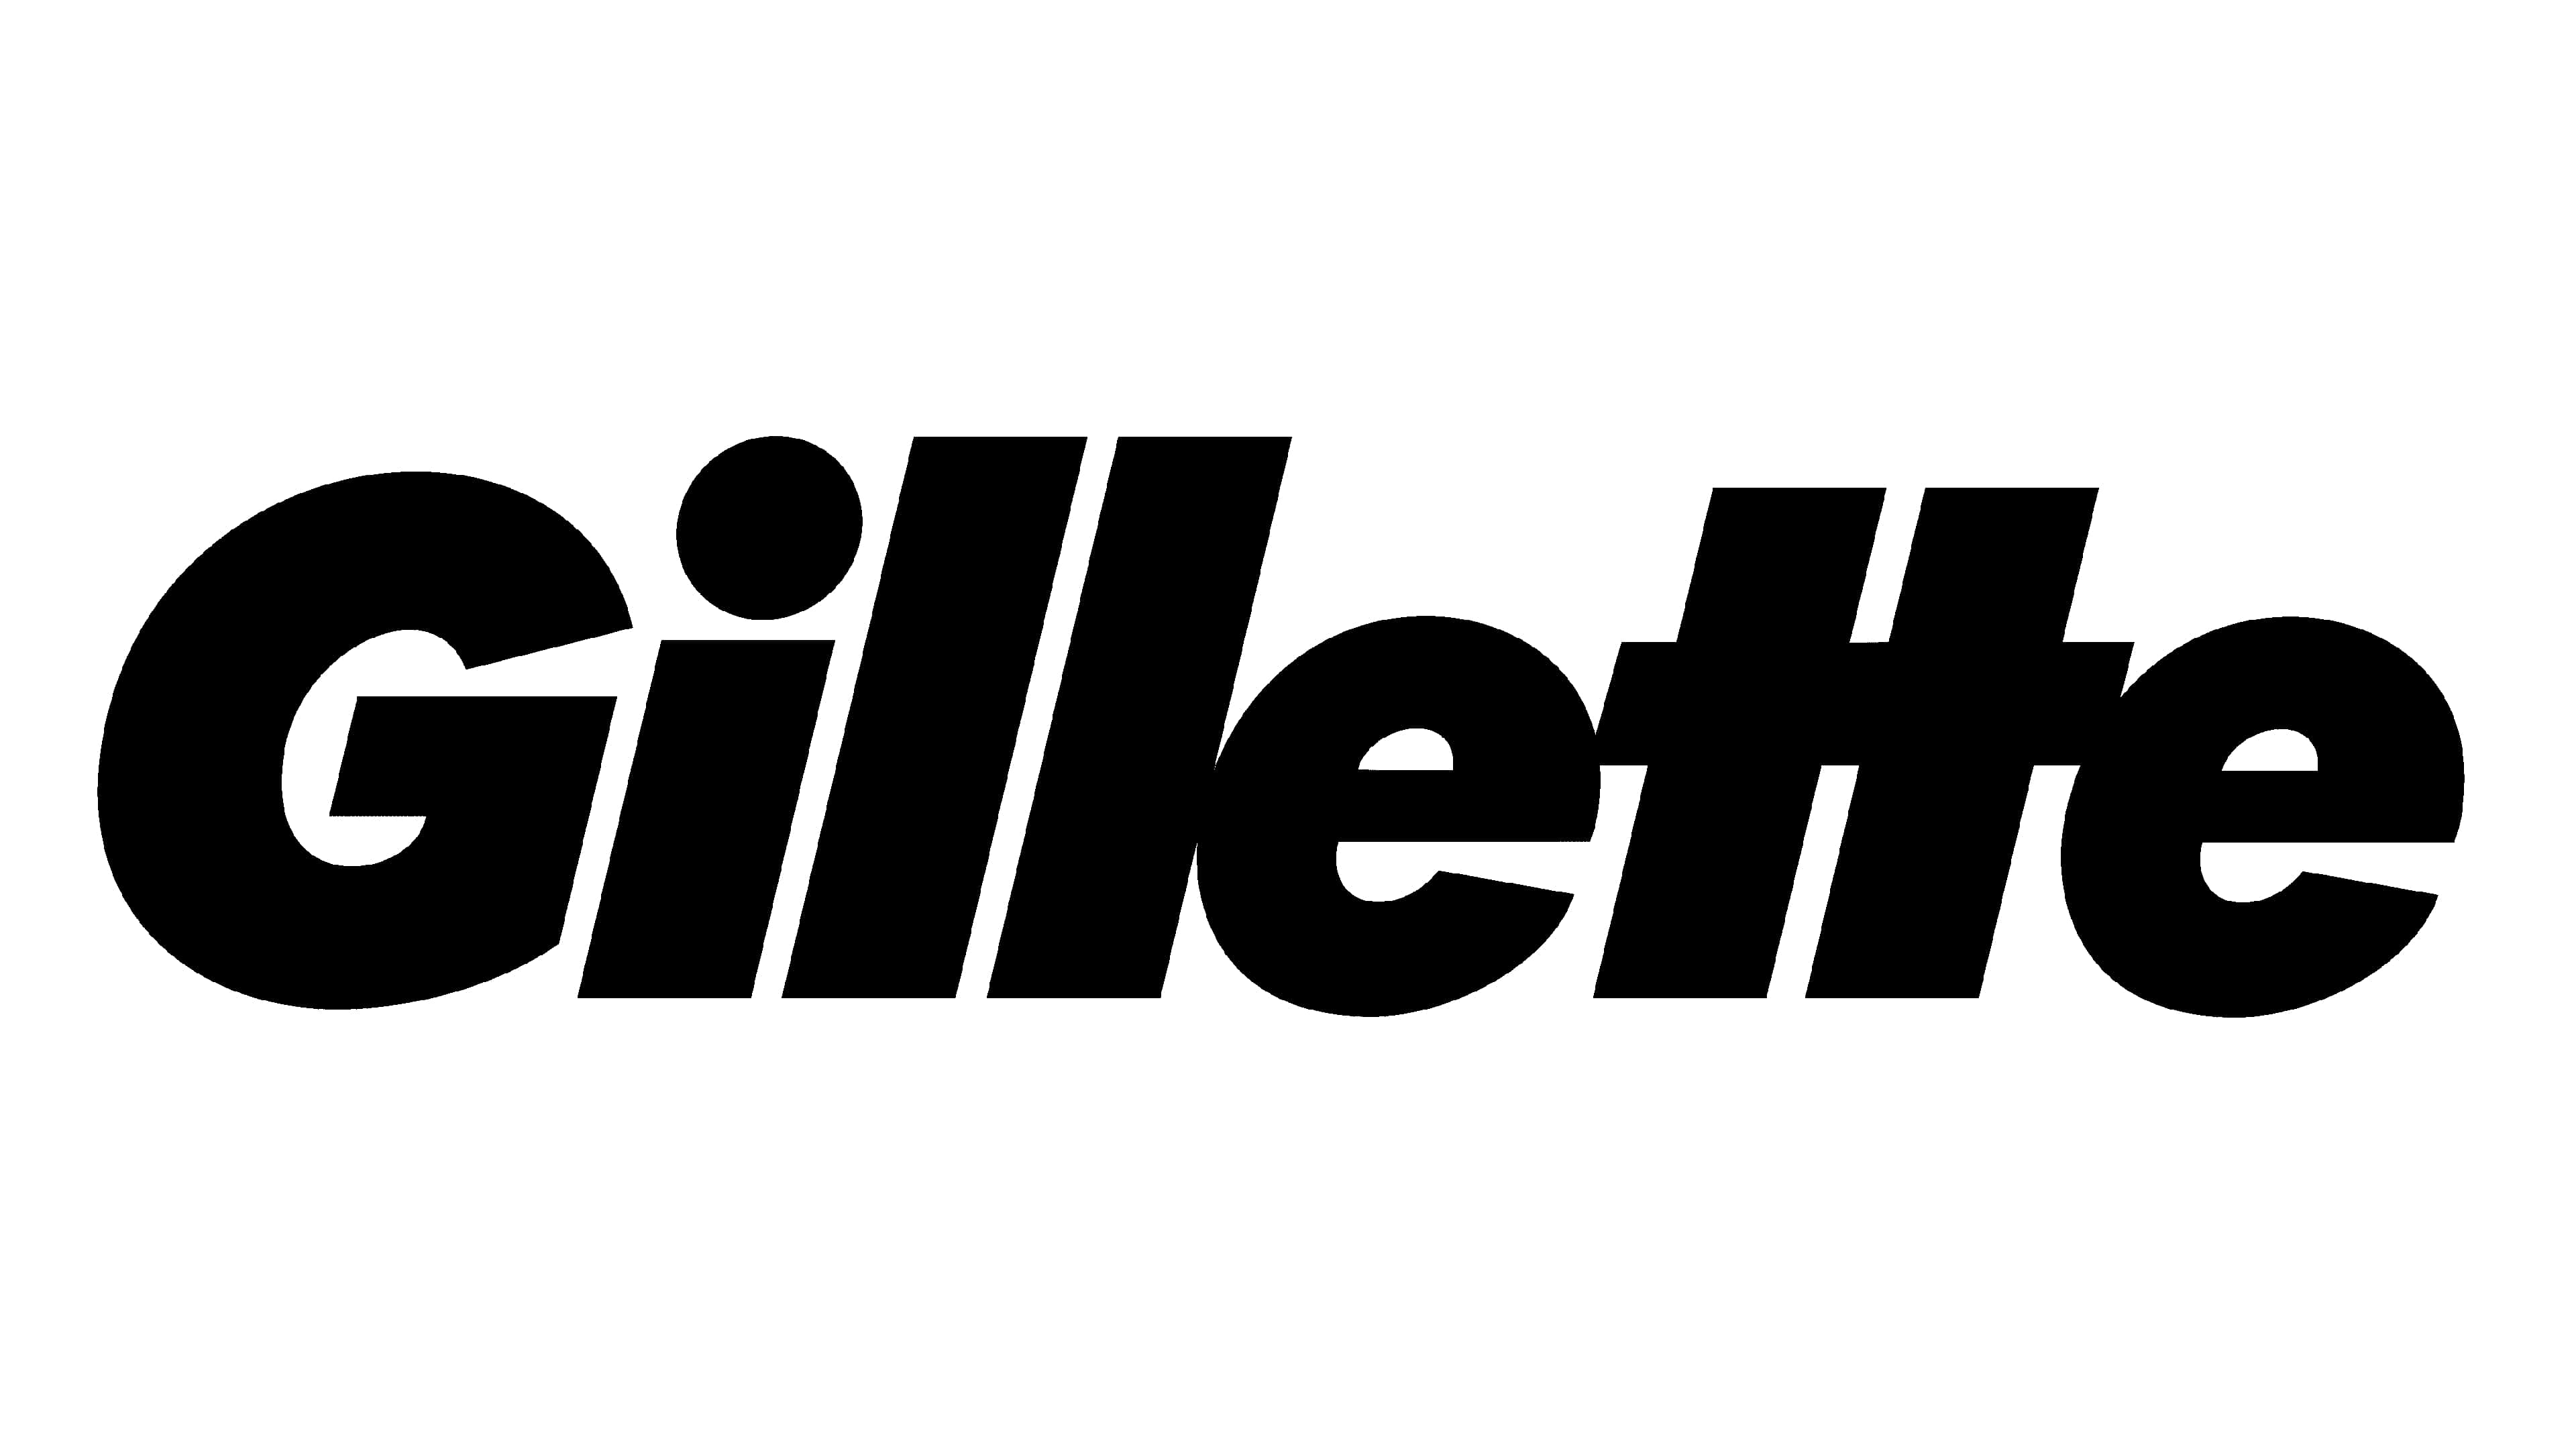 Mẫu thiết kế logo thương hiệu công ty GILLETTE 6